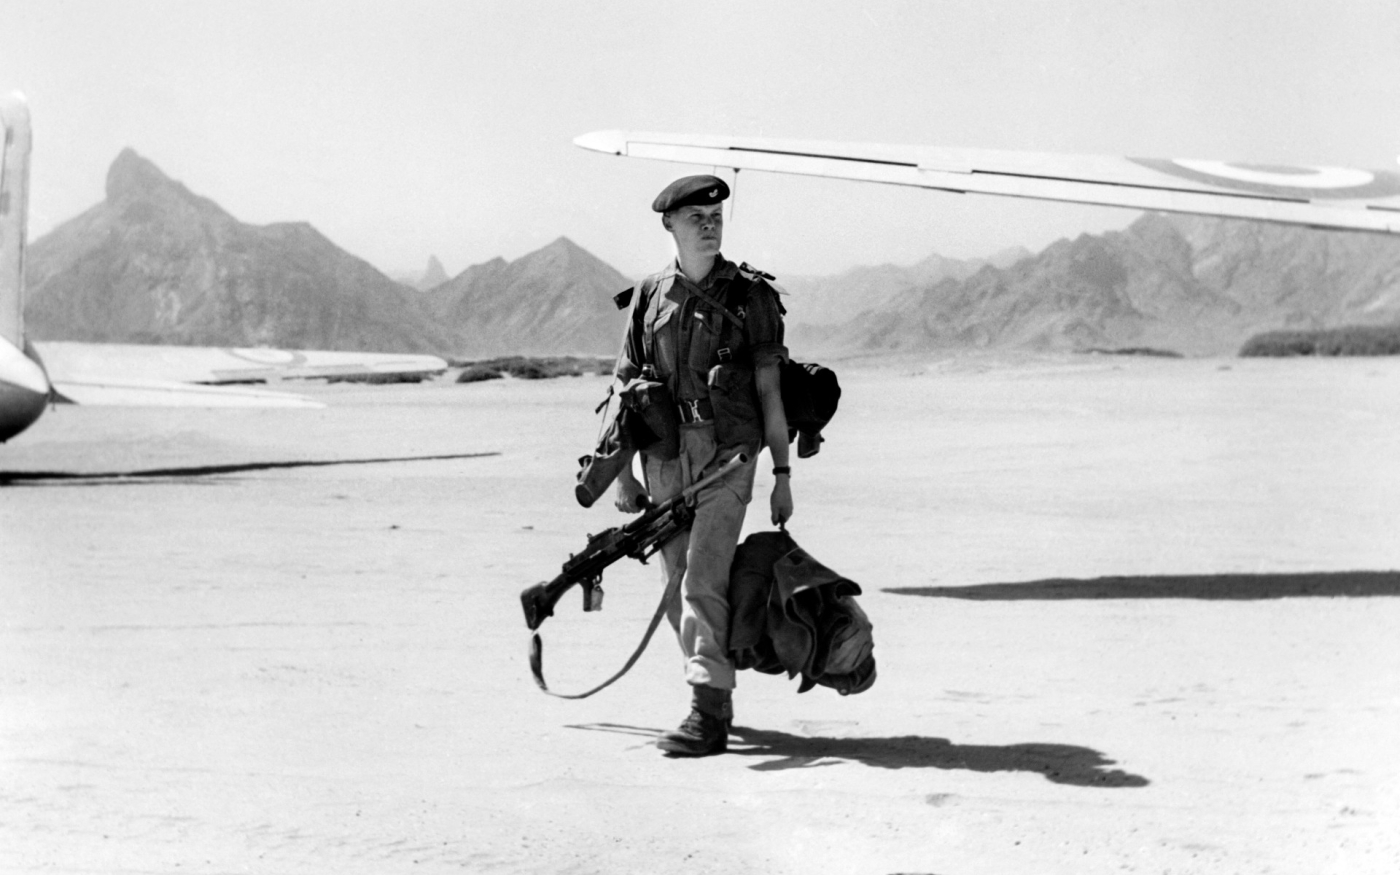 Un soldat de l’infanterie légère de Durham, régiment d’infanterie de l’armée britannique, atterrit sur la base aérienne de Beihan dans le désert d’Aden en 1957 (AFP)